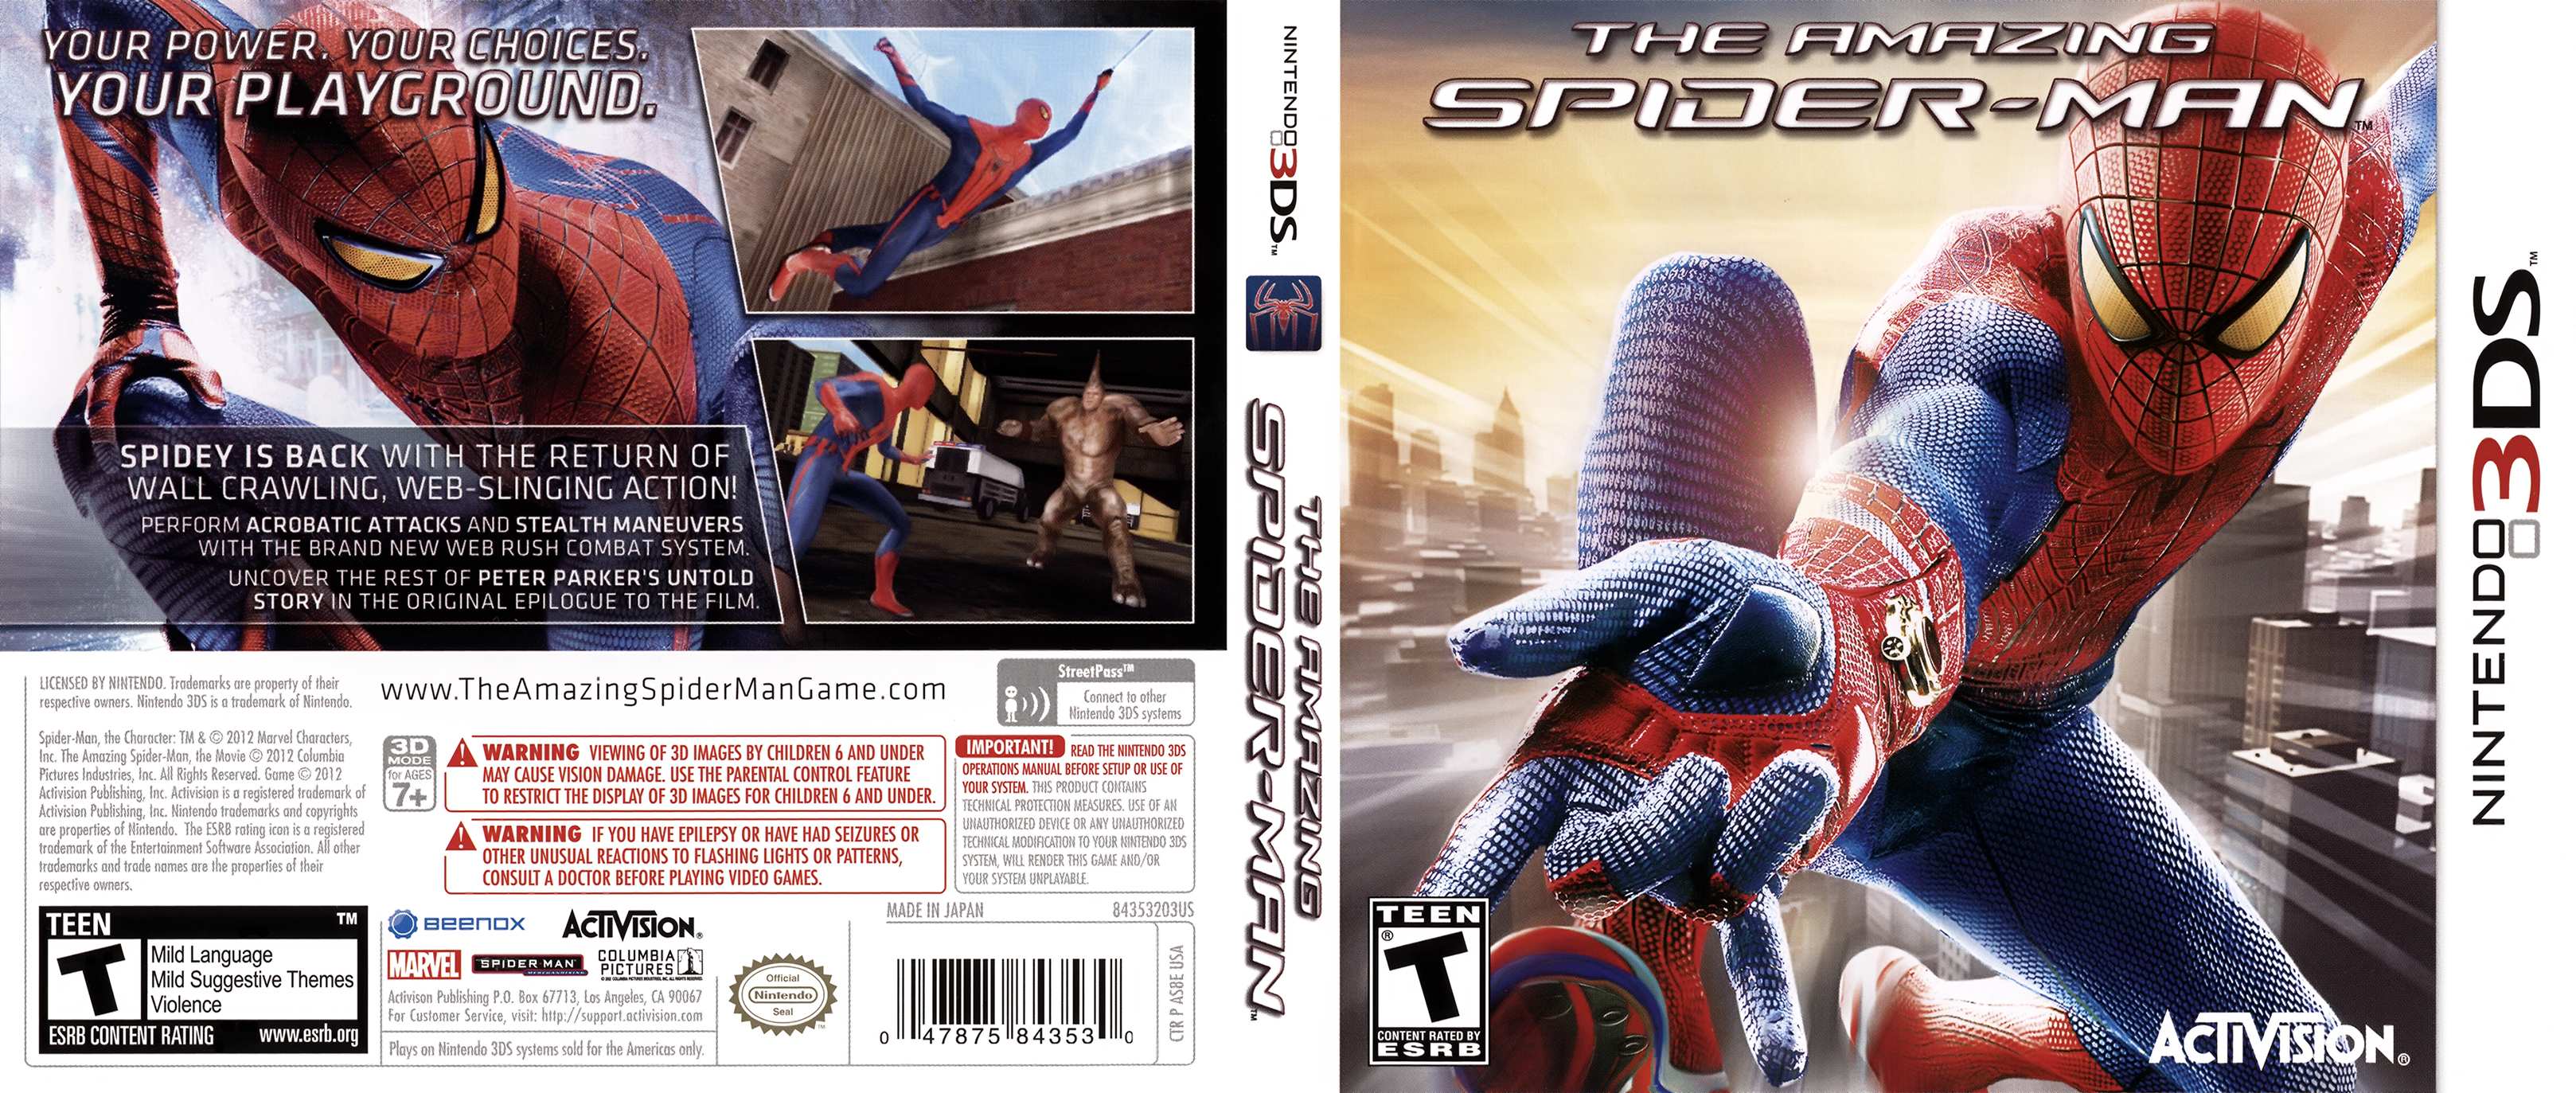 spider man 3 ds download